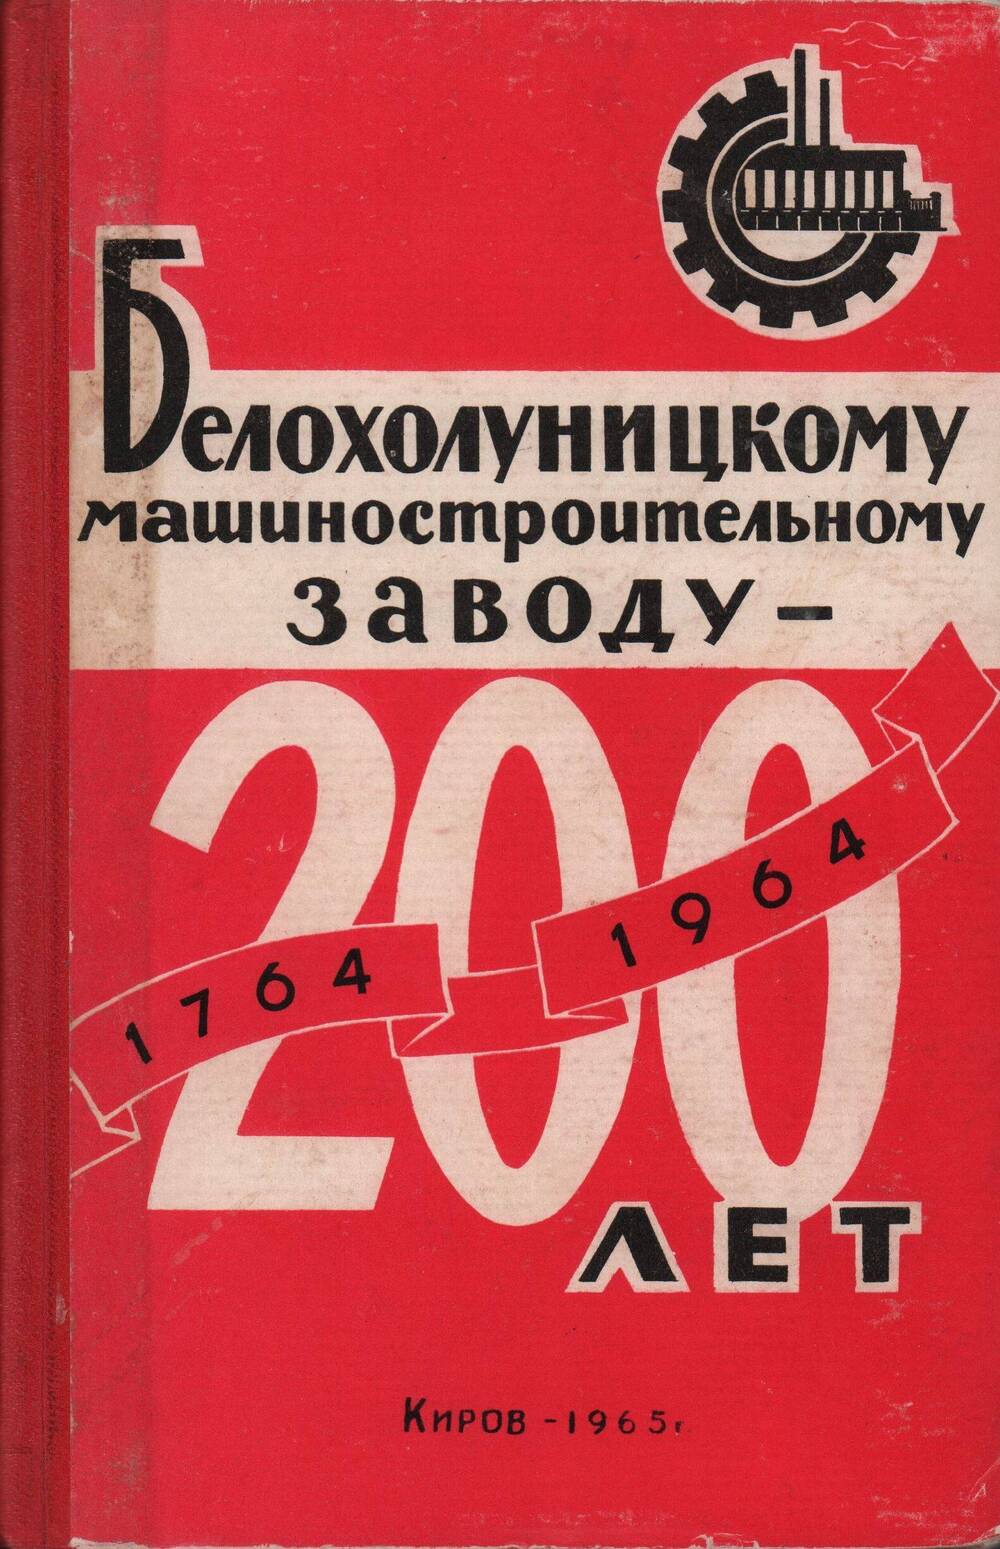 Книга Белохолуницкому машиностроительному заводу - 200 лет, 1965 г.